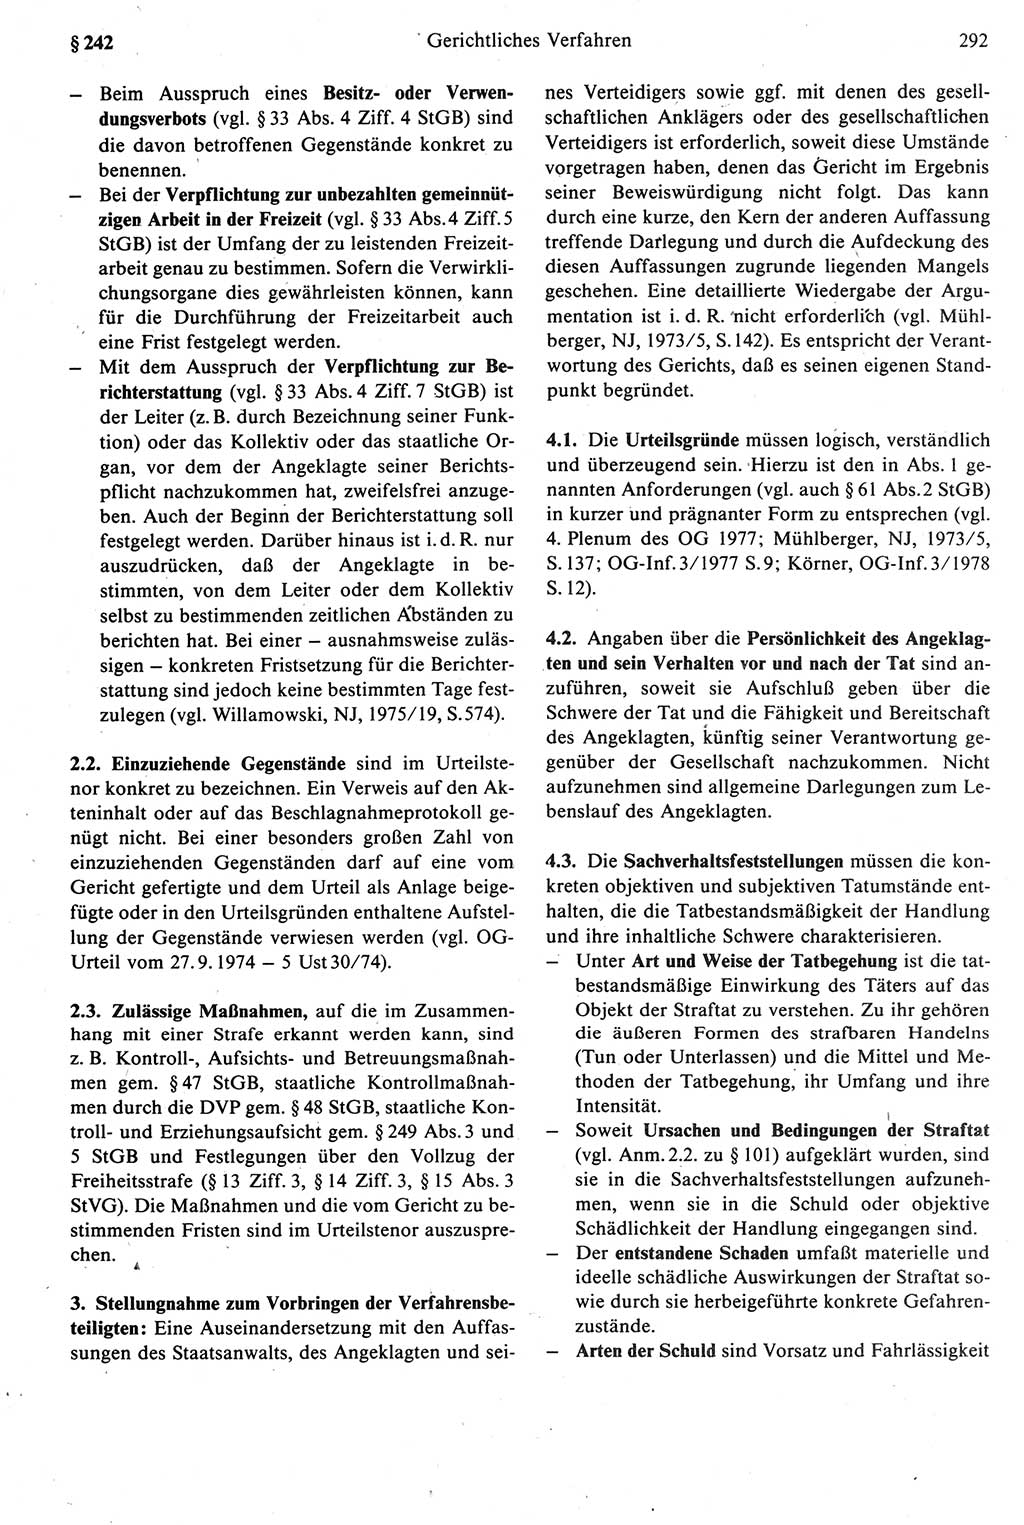 Strafprozeßrecht der DDR [Deutsche Demokratische Republik], Kommentar zur Strafprozeßordnung (StPO) 1987, Seite 292 (Strafprozeßr. DDR Komm. StPO 1987, S. 292)